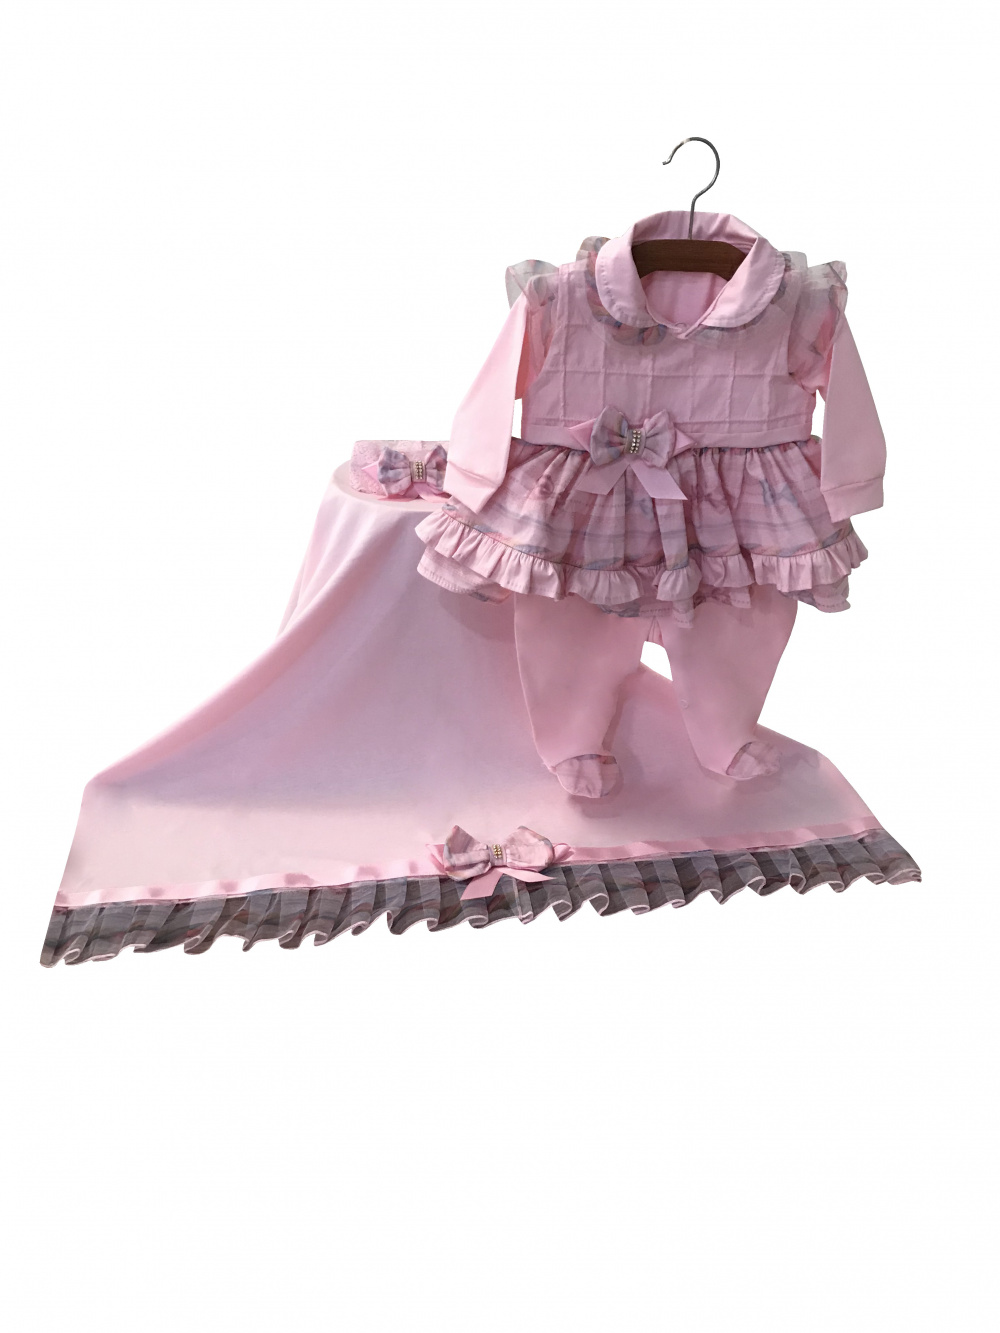 Kit Saída Maternidade - Rosa com vestido